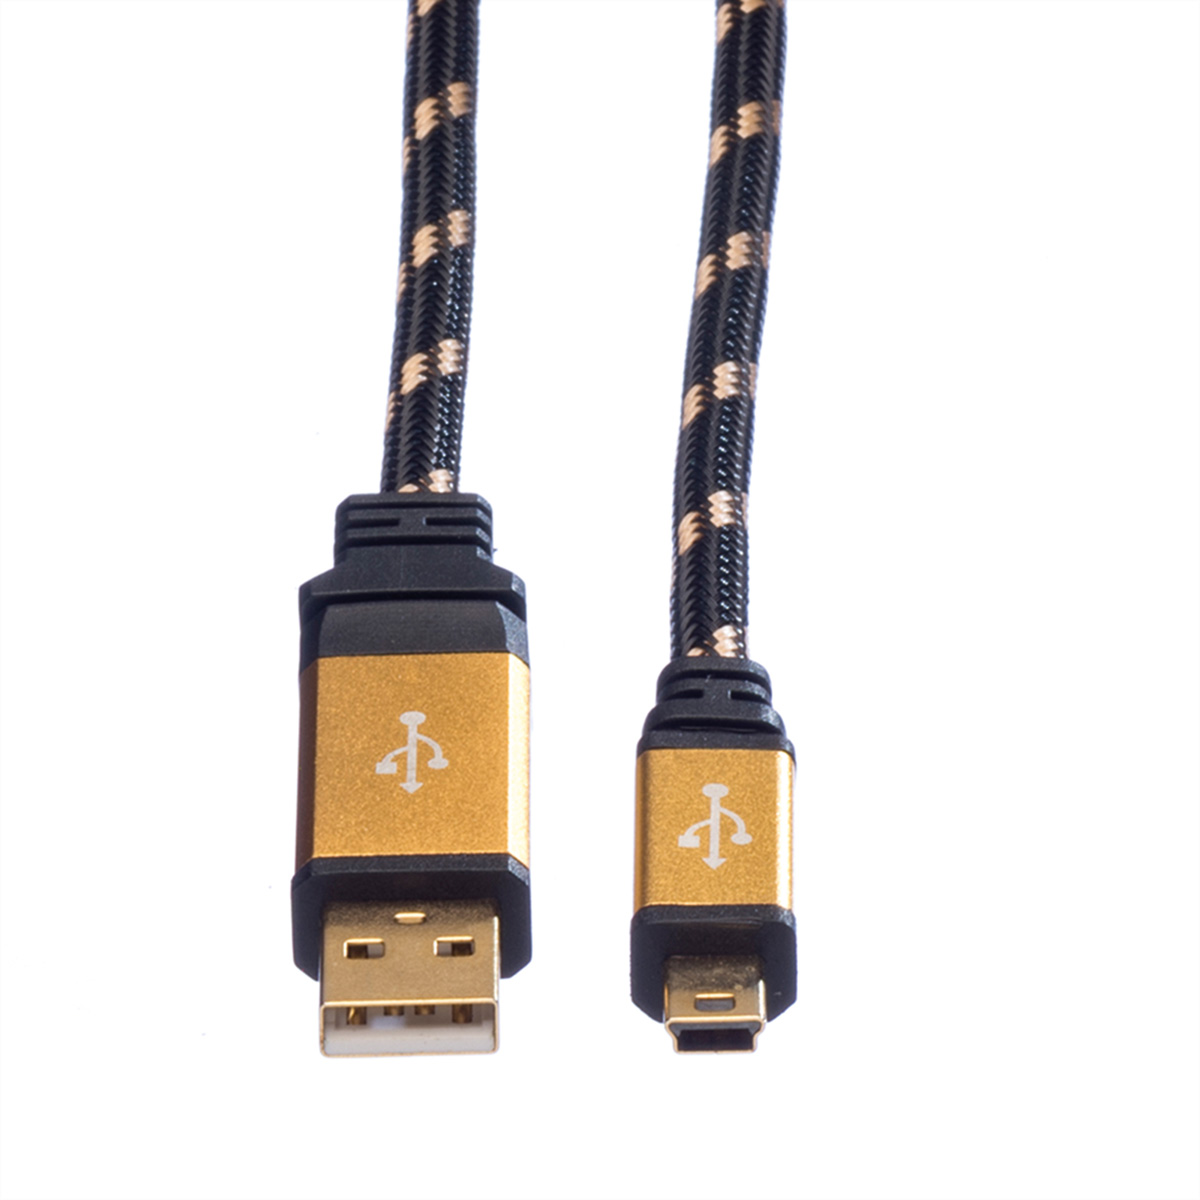 Kabel Typ USB Kabel, - 5-Pin USB ROLINE Mini 2.0 GOLD Mini 2.0 A